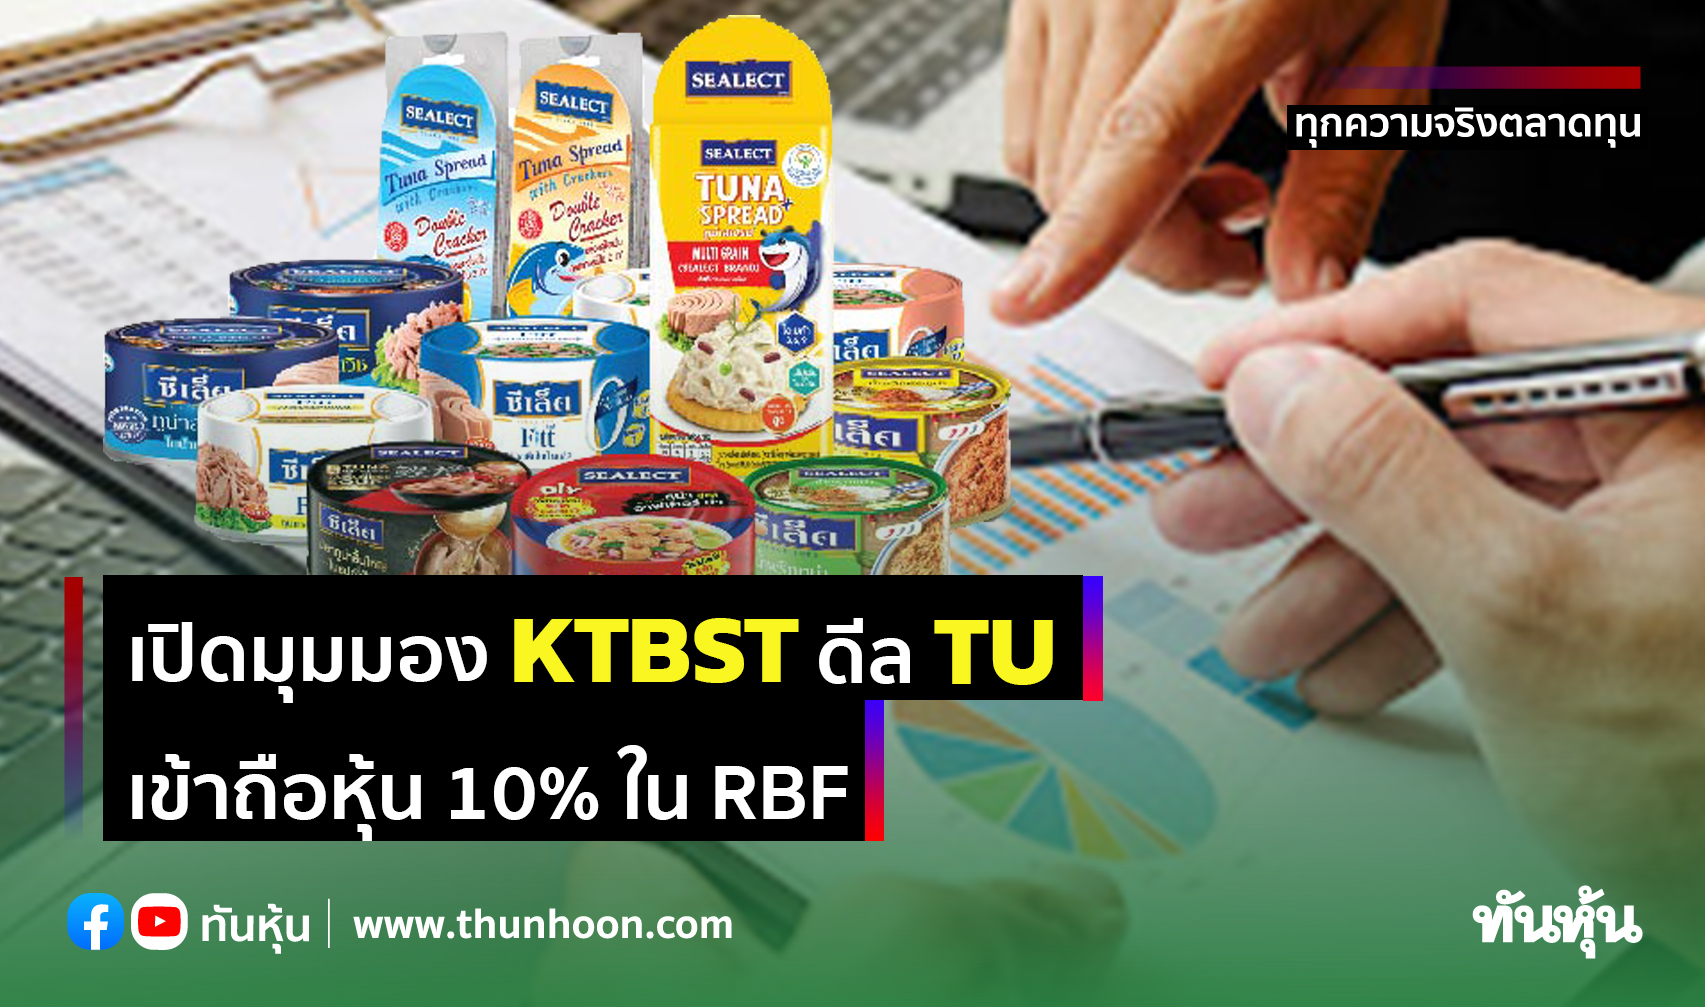 เปิดมุมมอง KTBST ดีล TU  เข้าถือหุ้น 10% ใน RBF